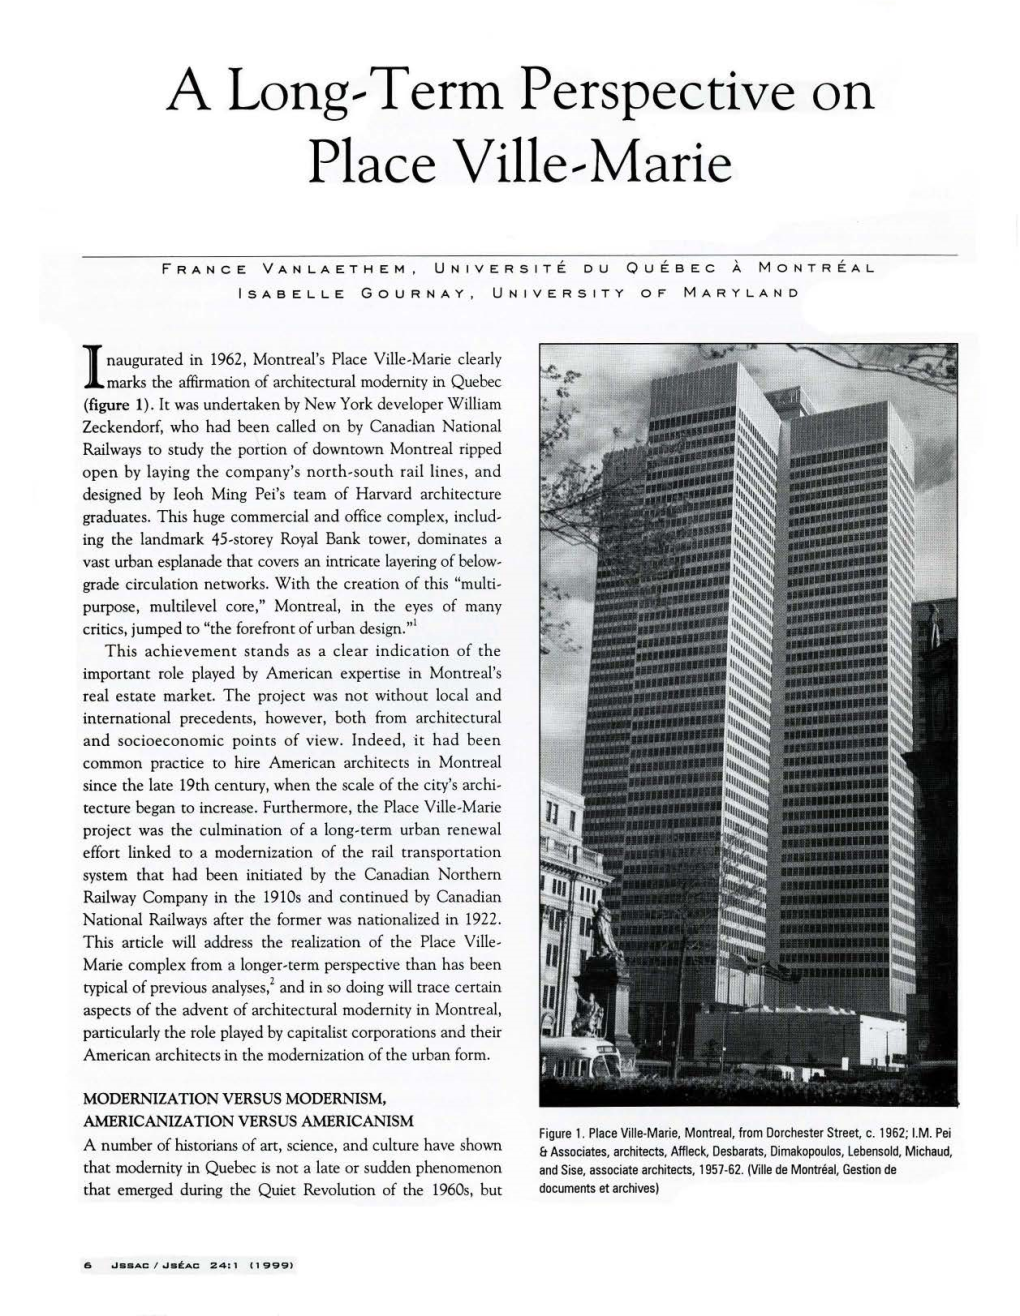 Place Ville---Marie